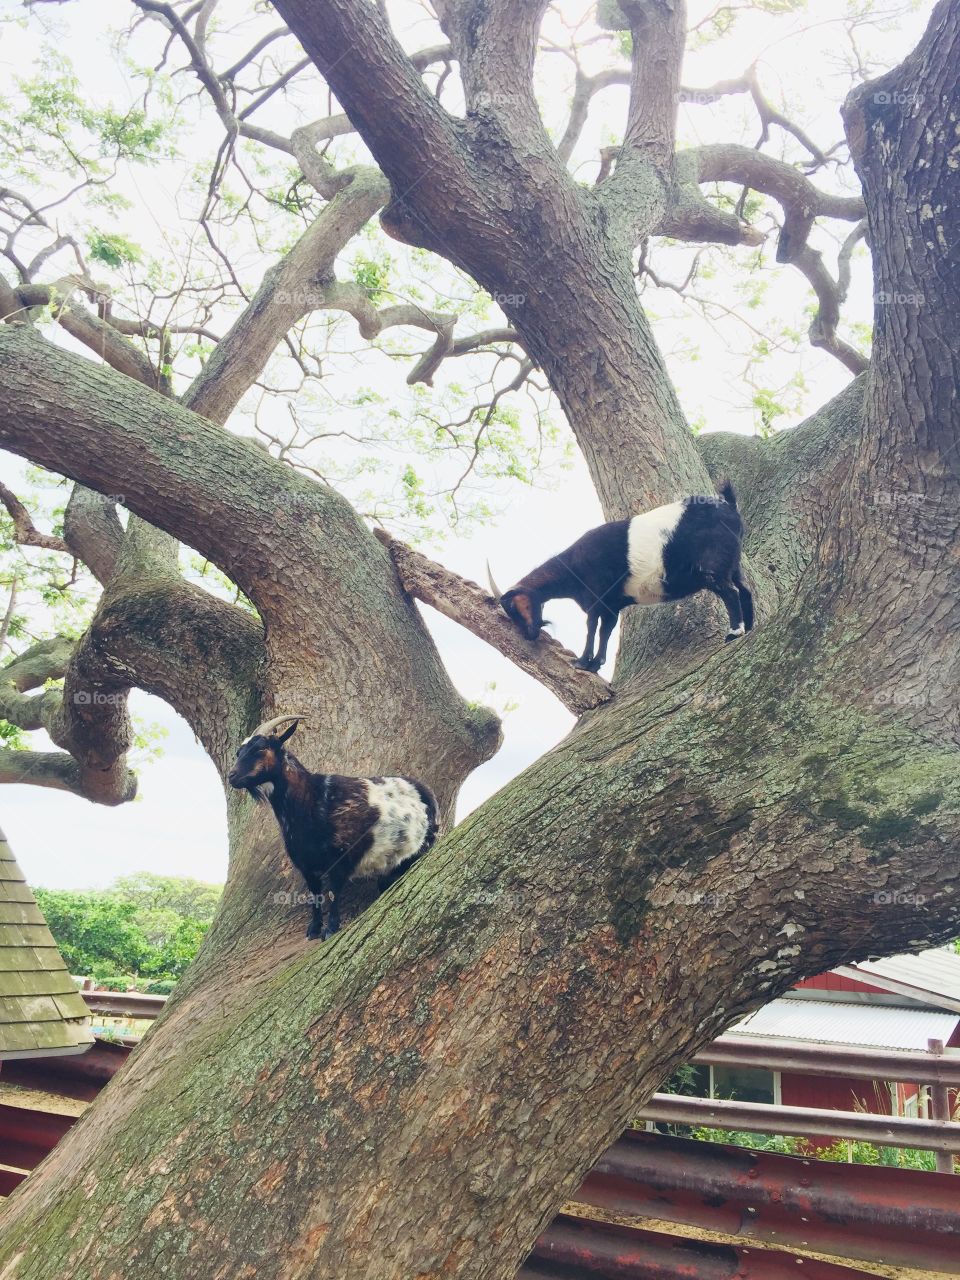 Goats on a tree